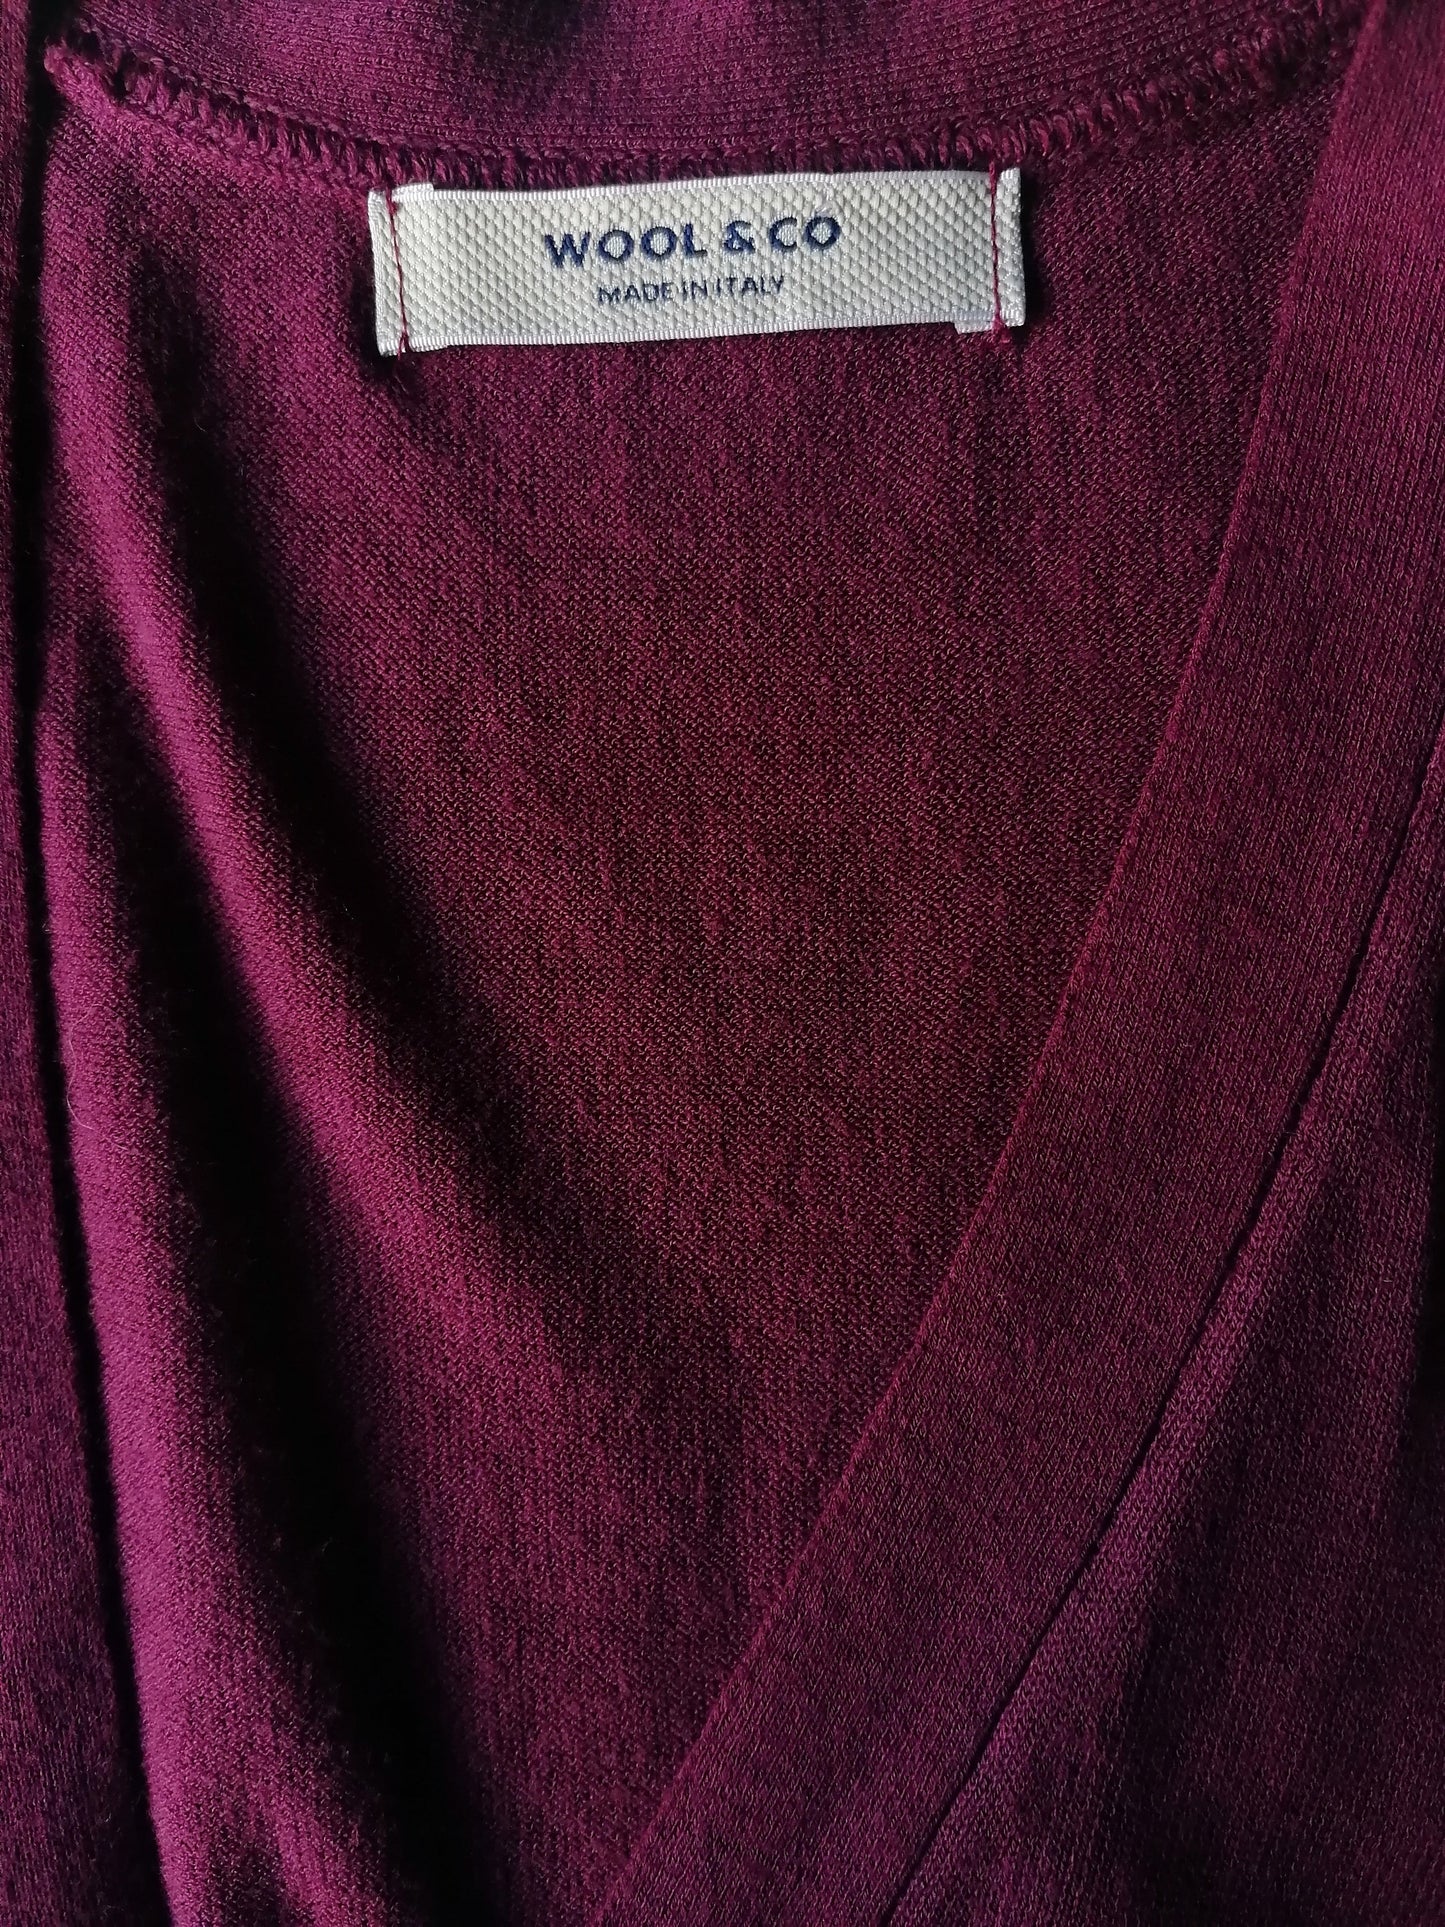 Wolle & Co -Baumwollweste. Bordeaux farbig. Größe S.